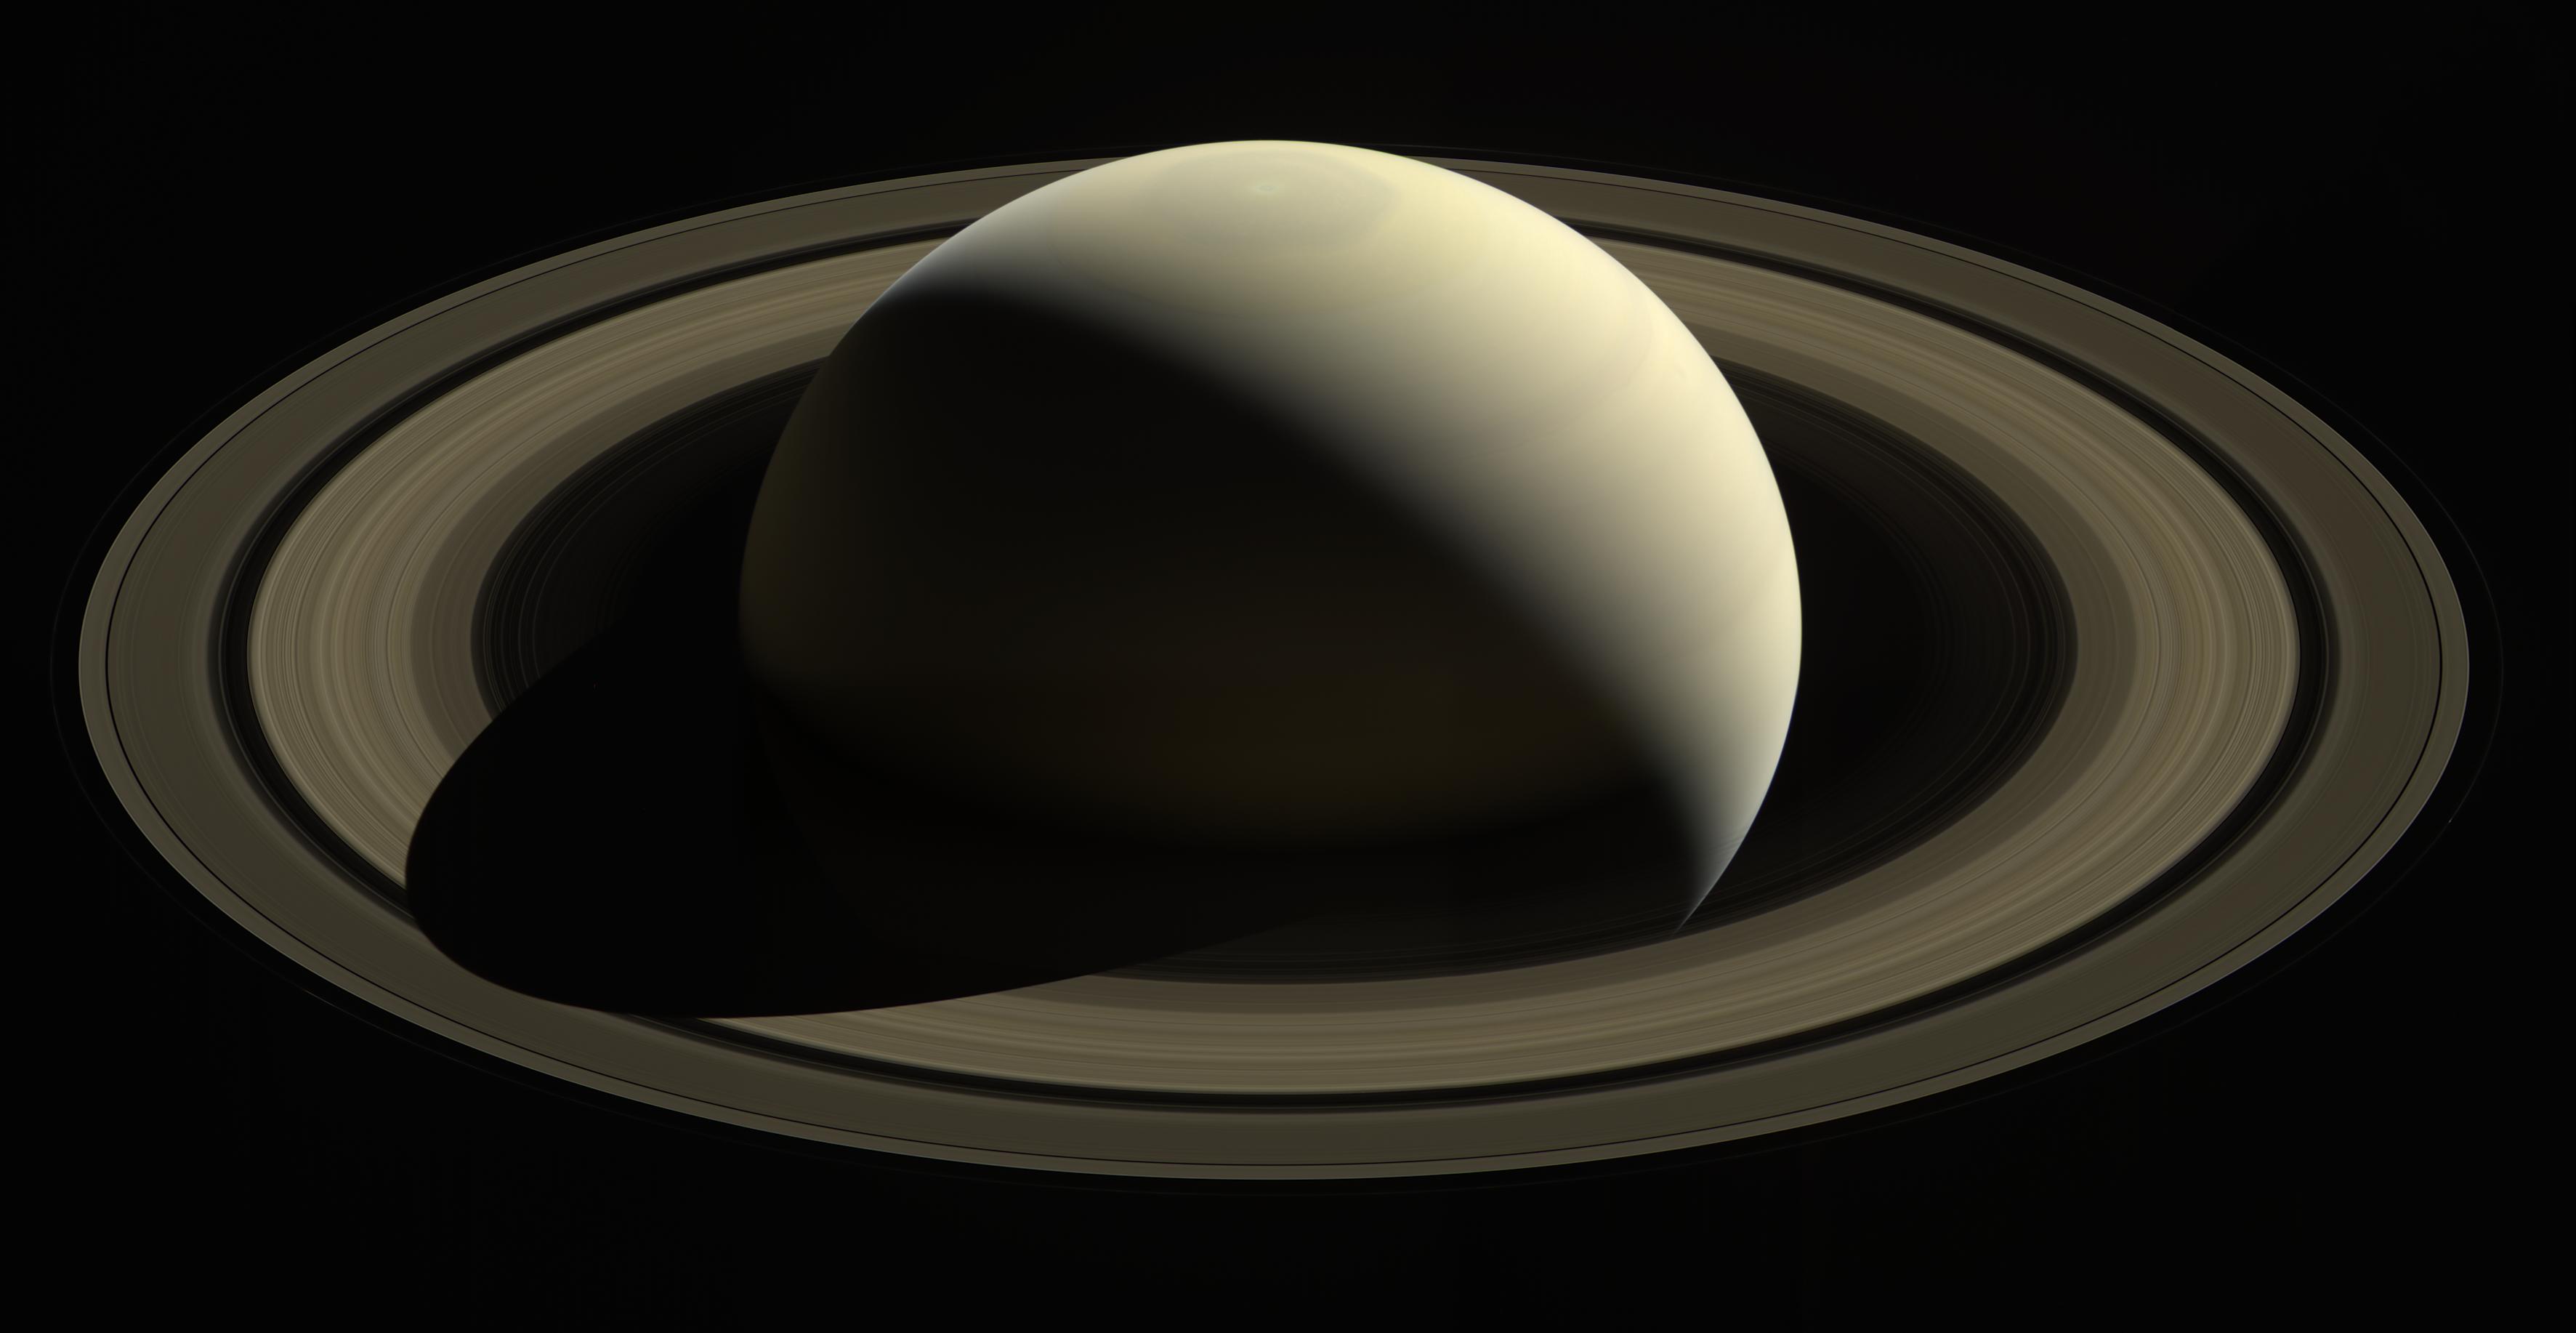 Una navicella spaziale osserva dall'alto un tenero Saturno color oro circondato dai suoi anelli.